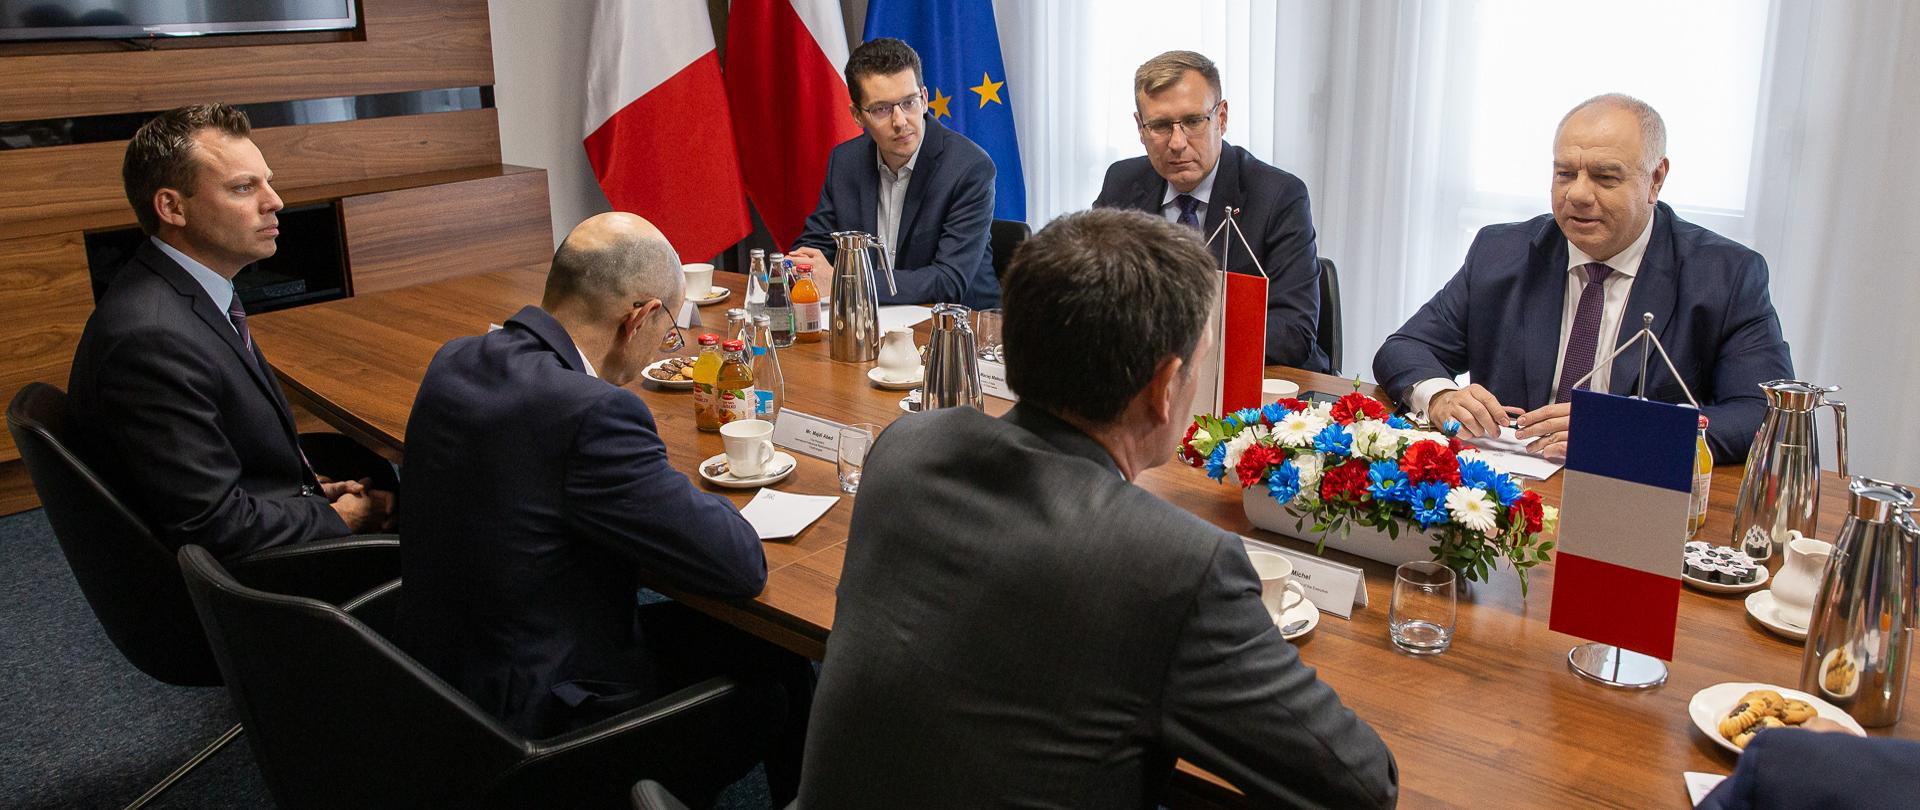 Na zdjęciu z lewej strony siedzą ambasador Francji Frederic Billet i przedstawiciele firmy Total Energies, z prawej strony wicepremier Jacek Sasin oraz wiceminister Maciej Małecki. Na stole proporczyki i kwiaty. 